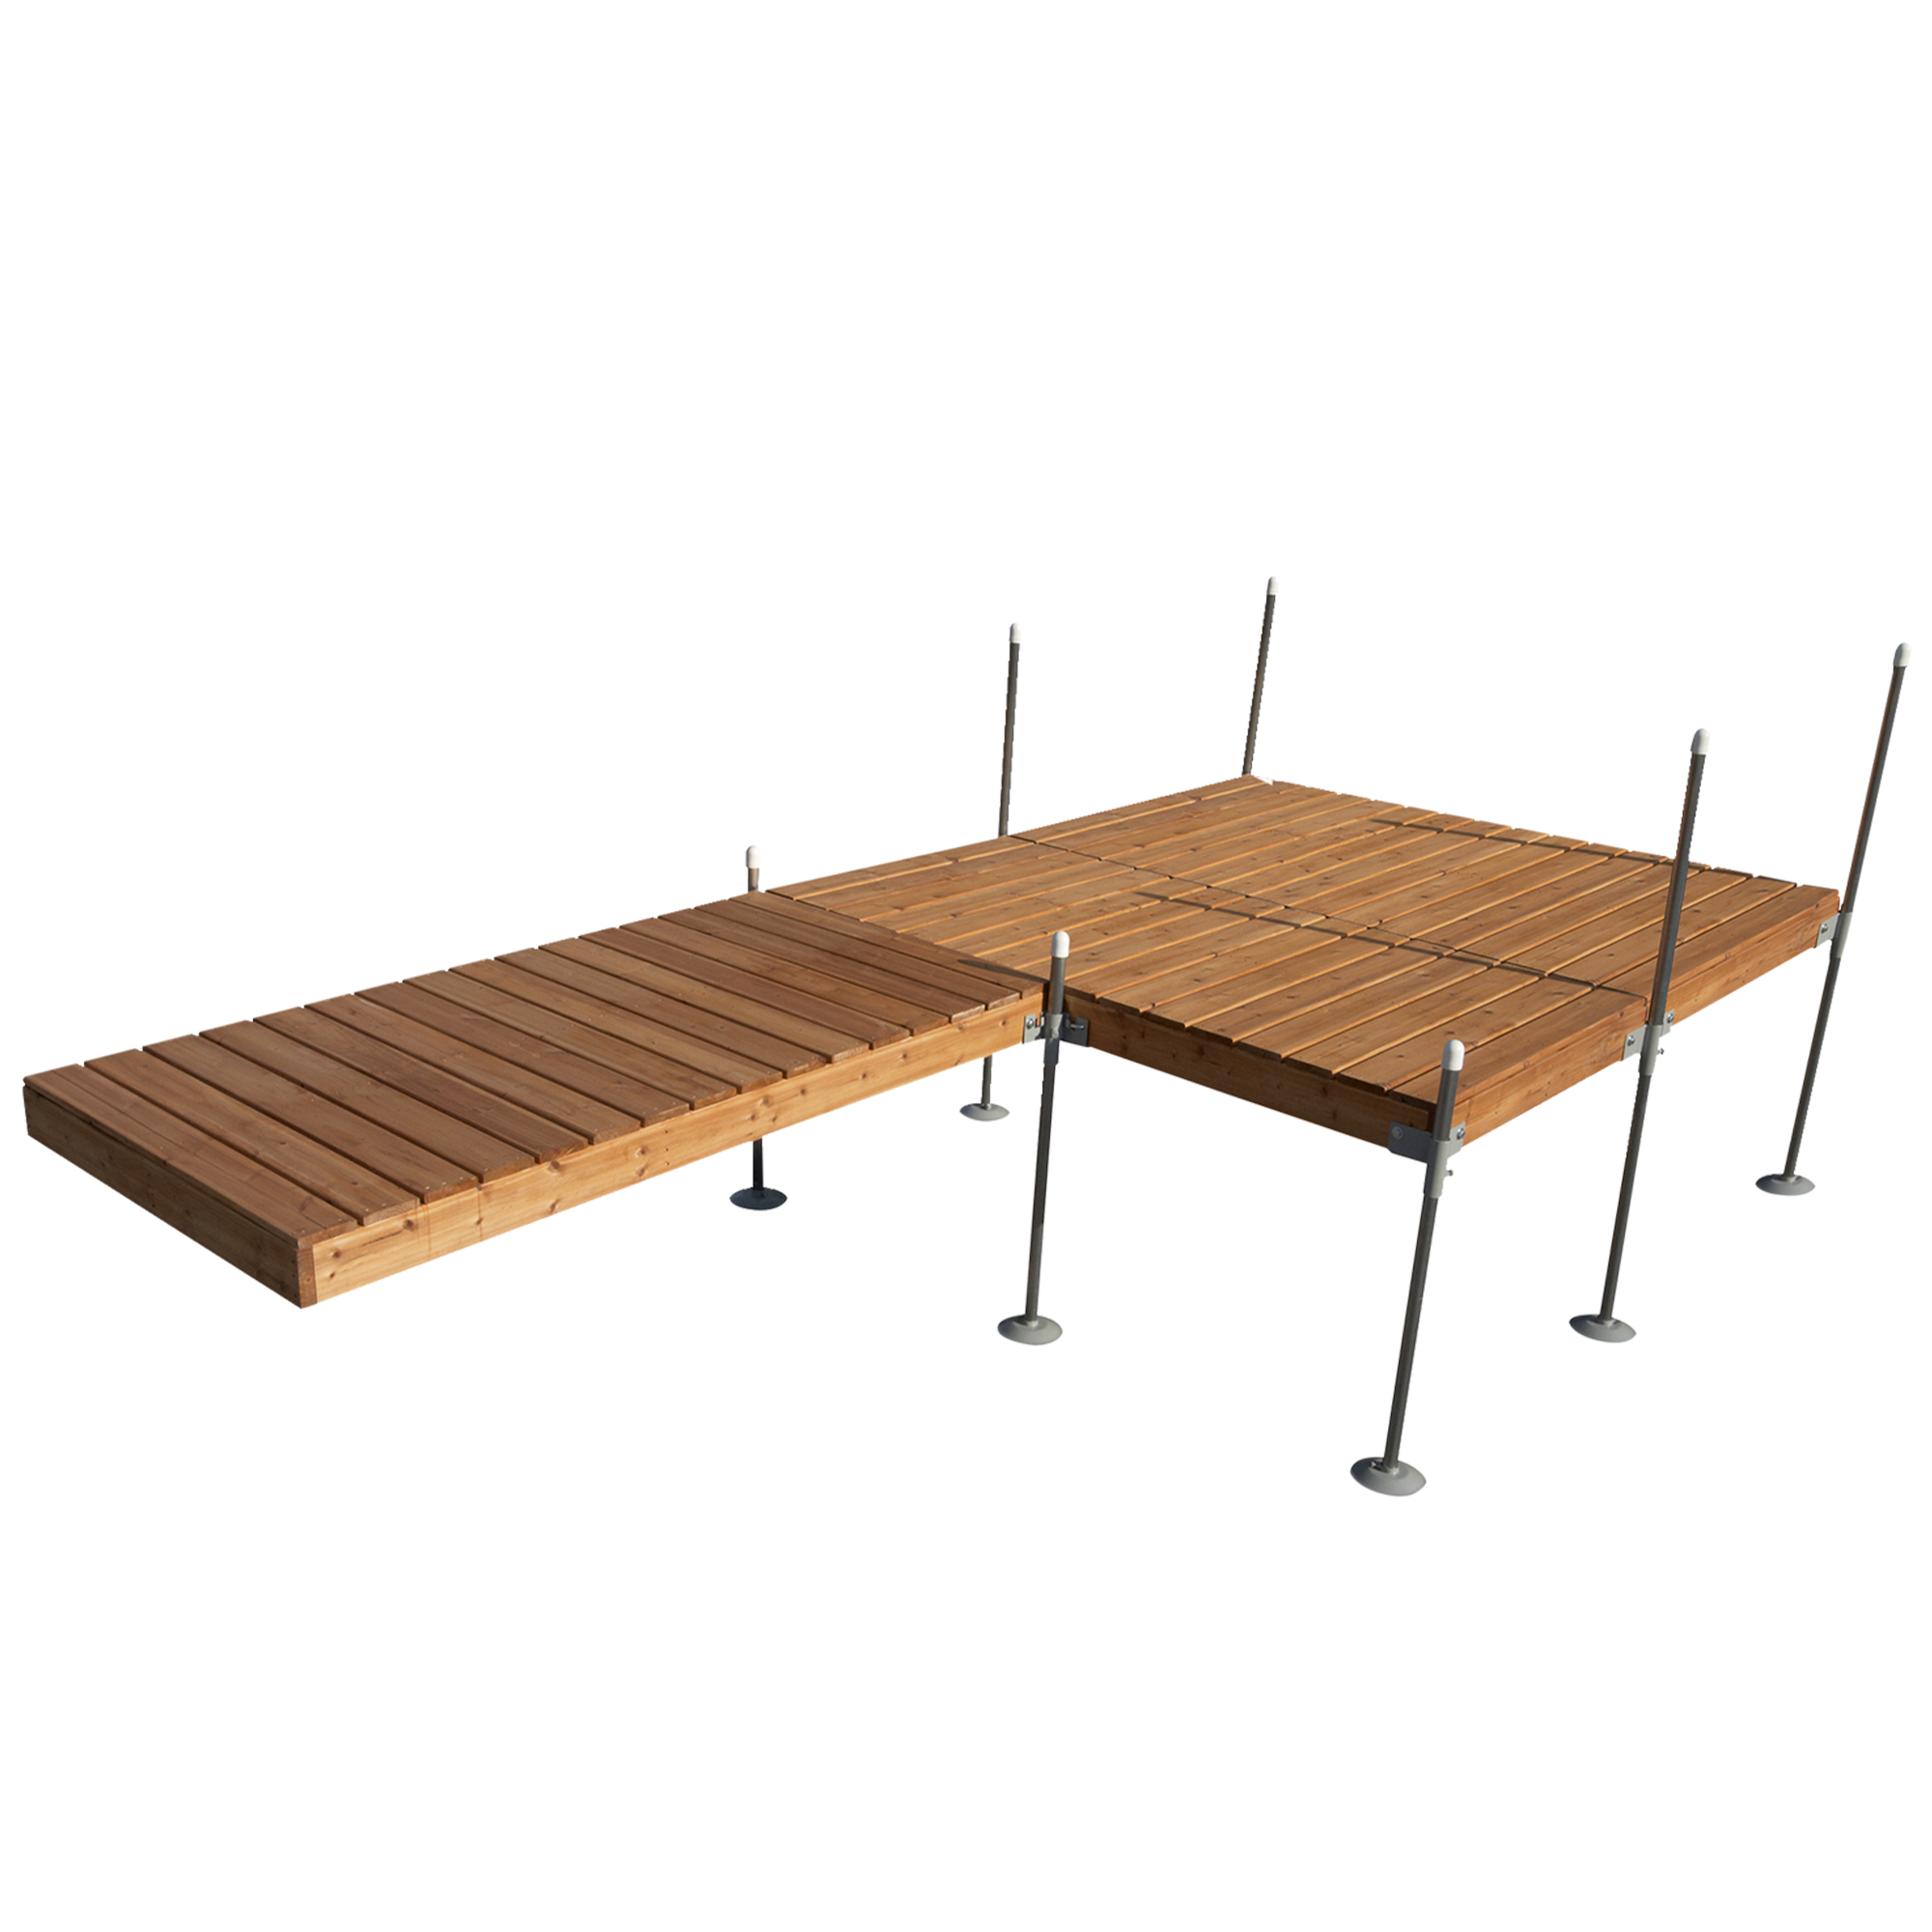 16' Platform Boat Dock System with Cedar Frame and Decking